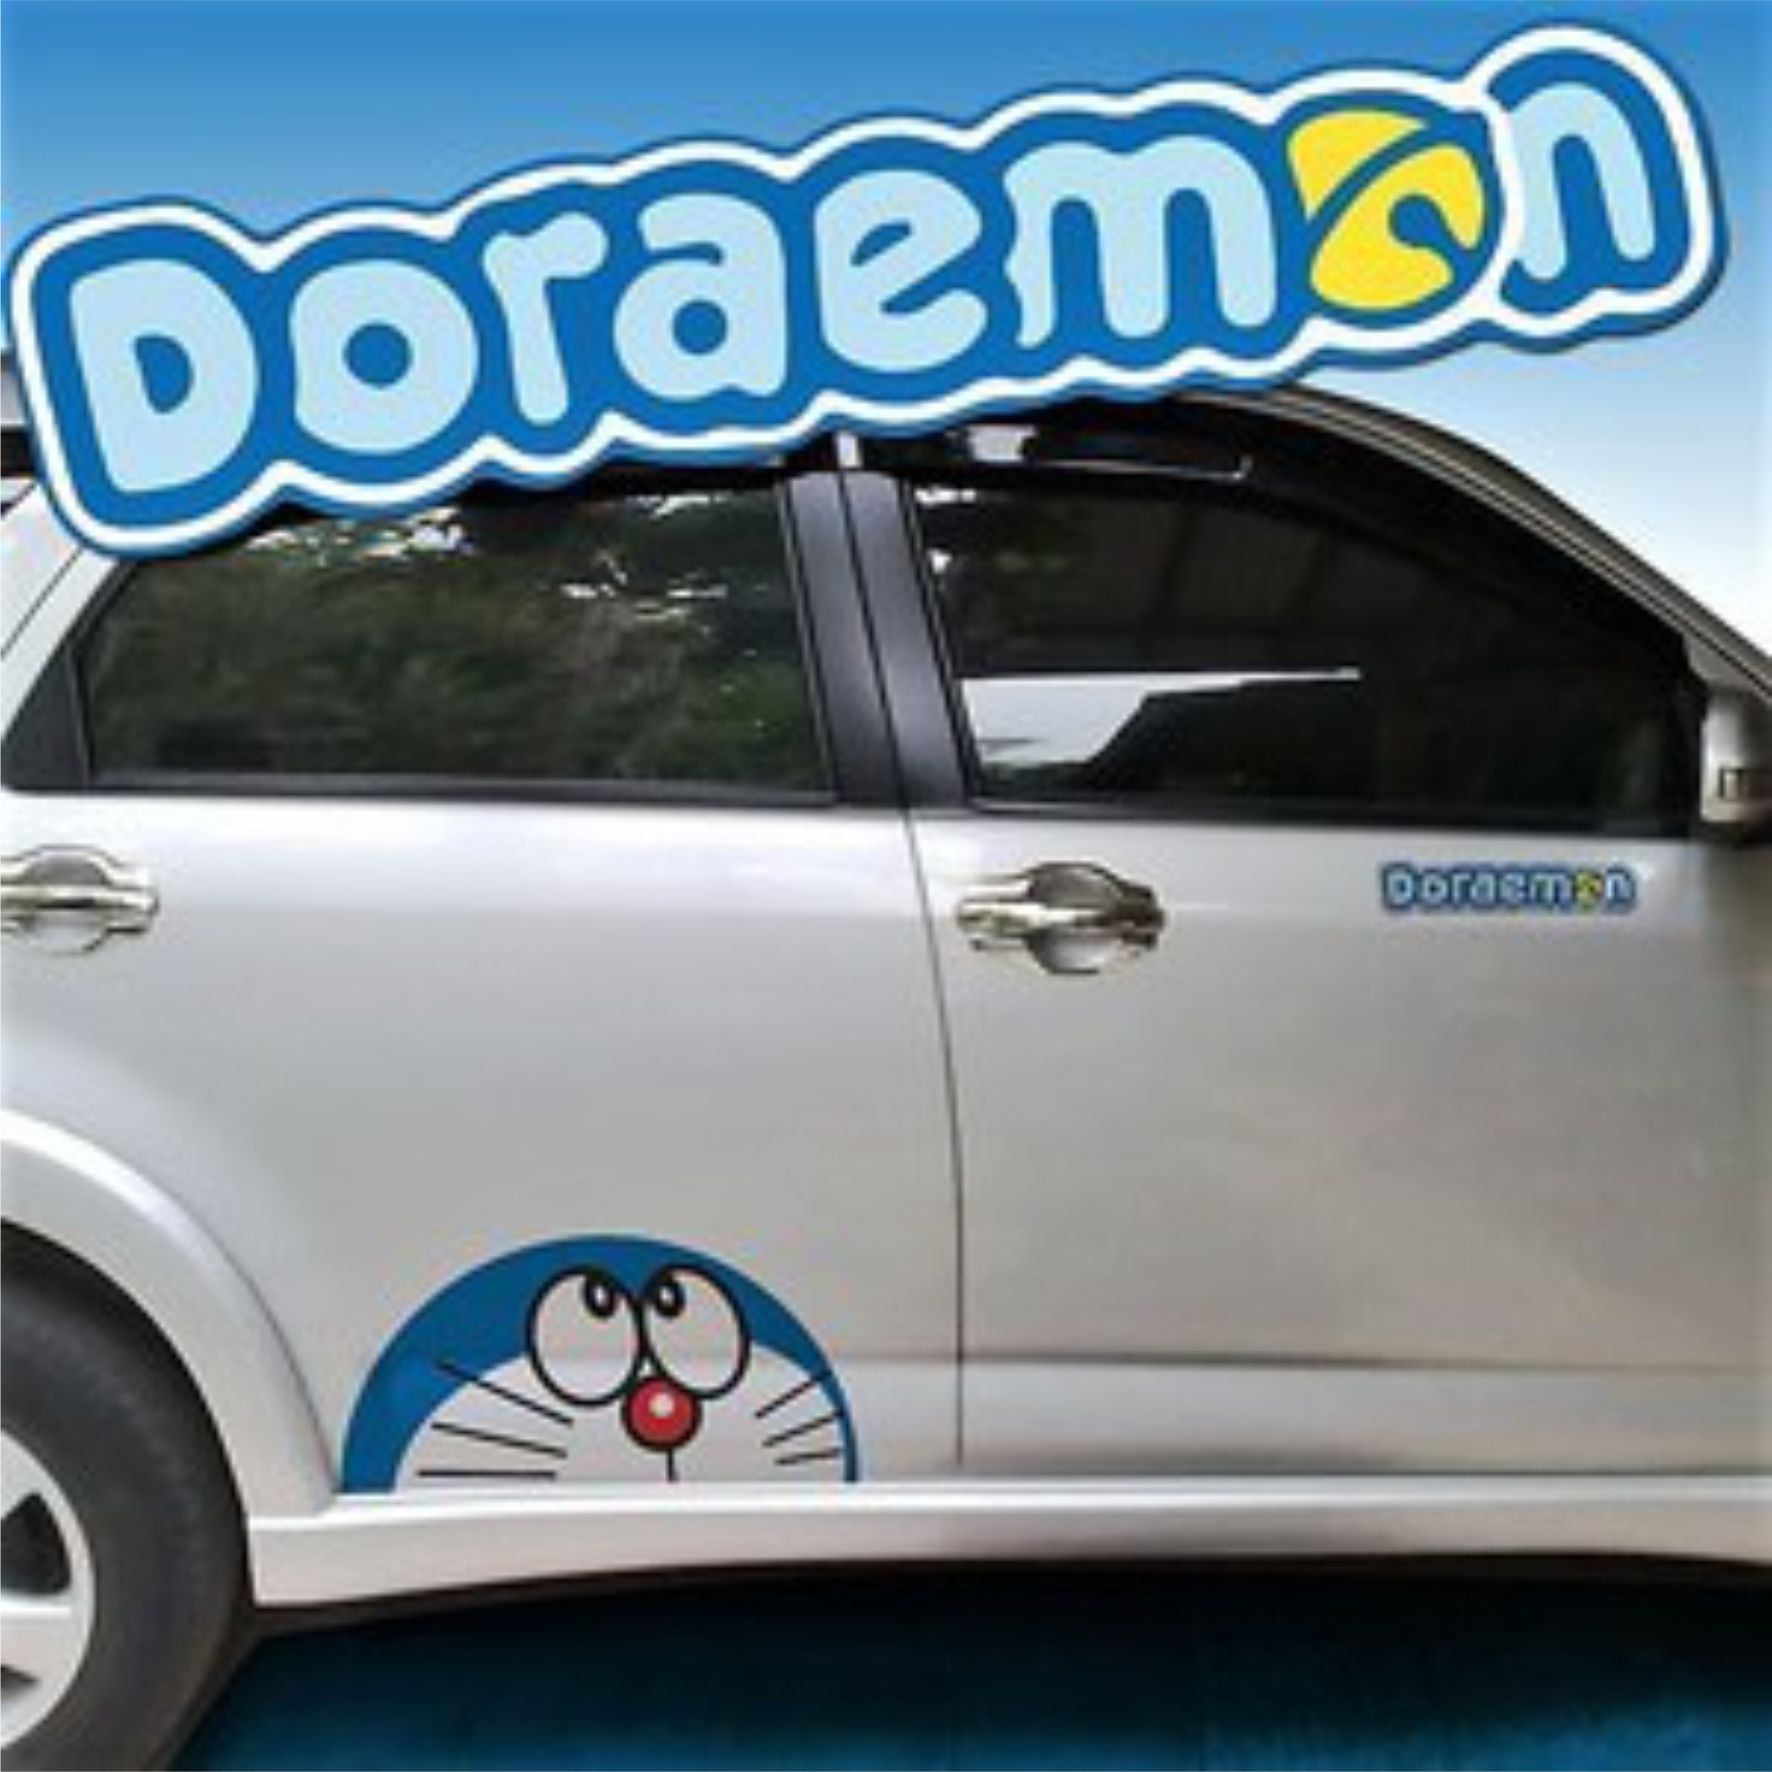 Stiker Body Doraemon Mobil Membeli Stiker Body Doraemon Mobil Harga Terbaik Di Indonesia Wwwlazadacoid